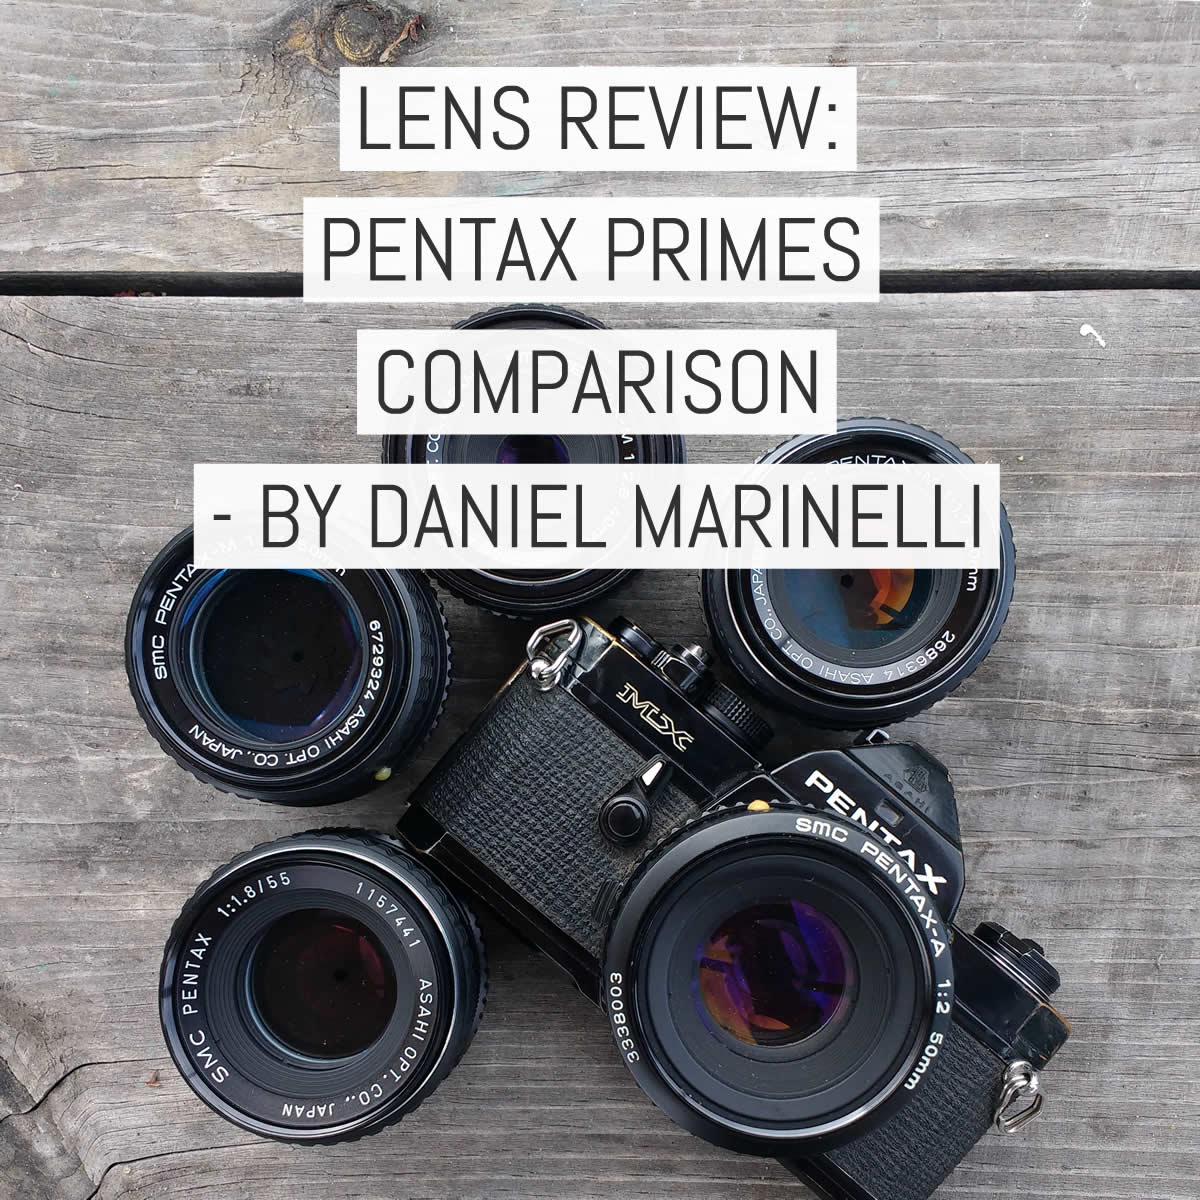 Lens review: Pentax prime comparison - five lenses head to head